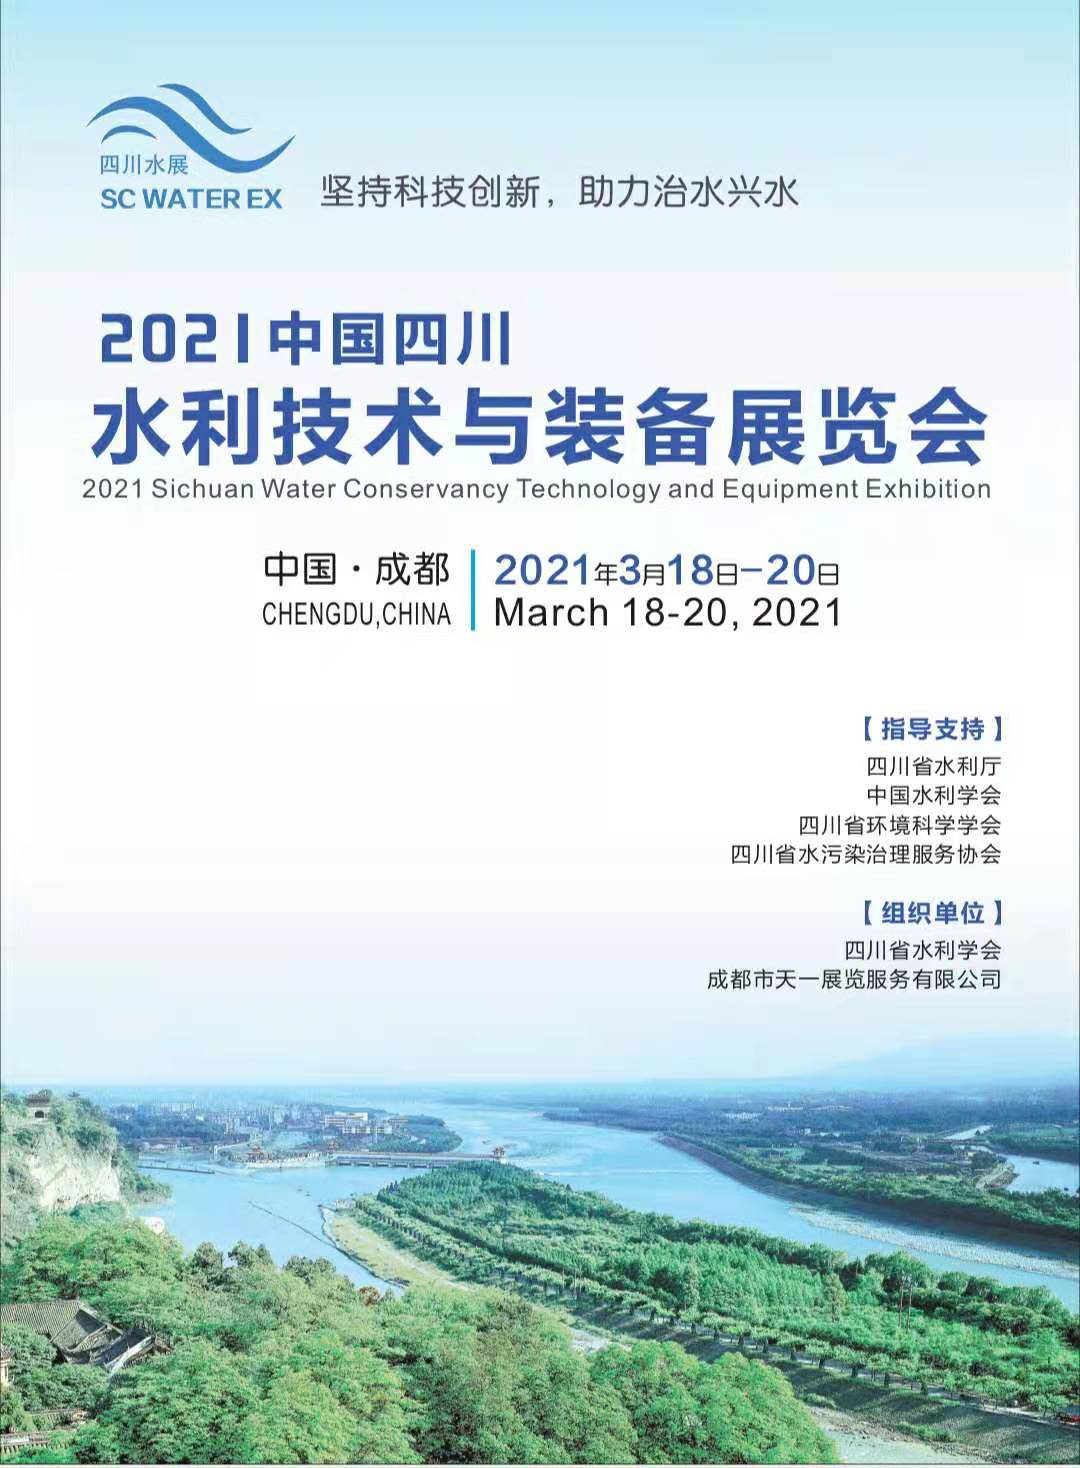 关于2021中国四川水利技术与装备展览会的邀请